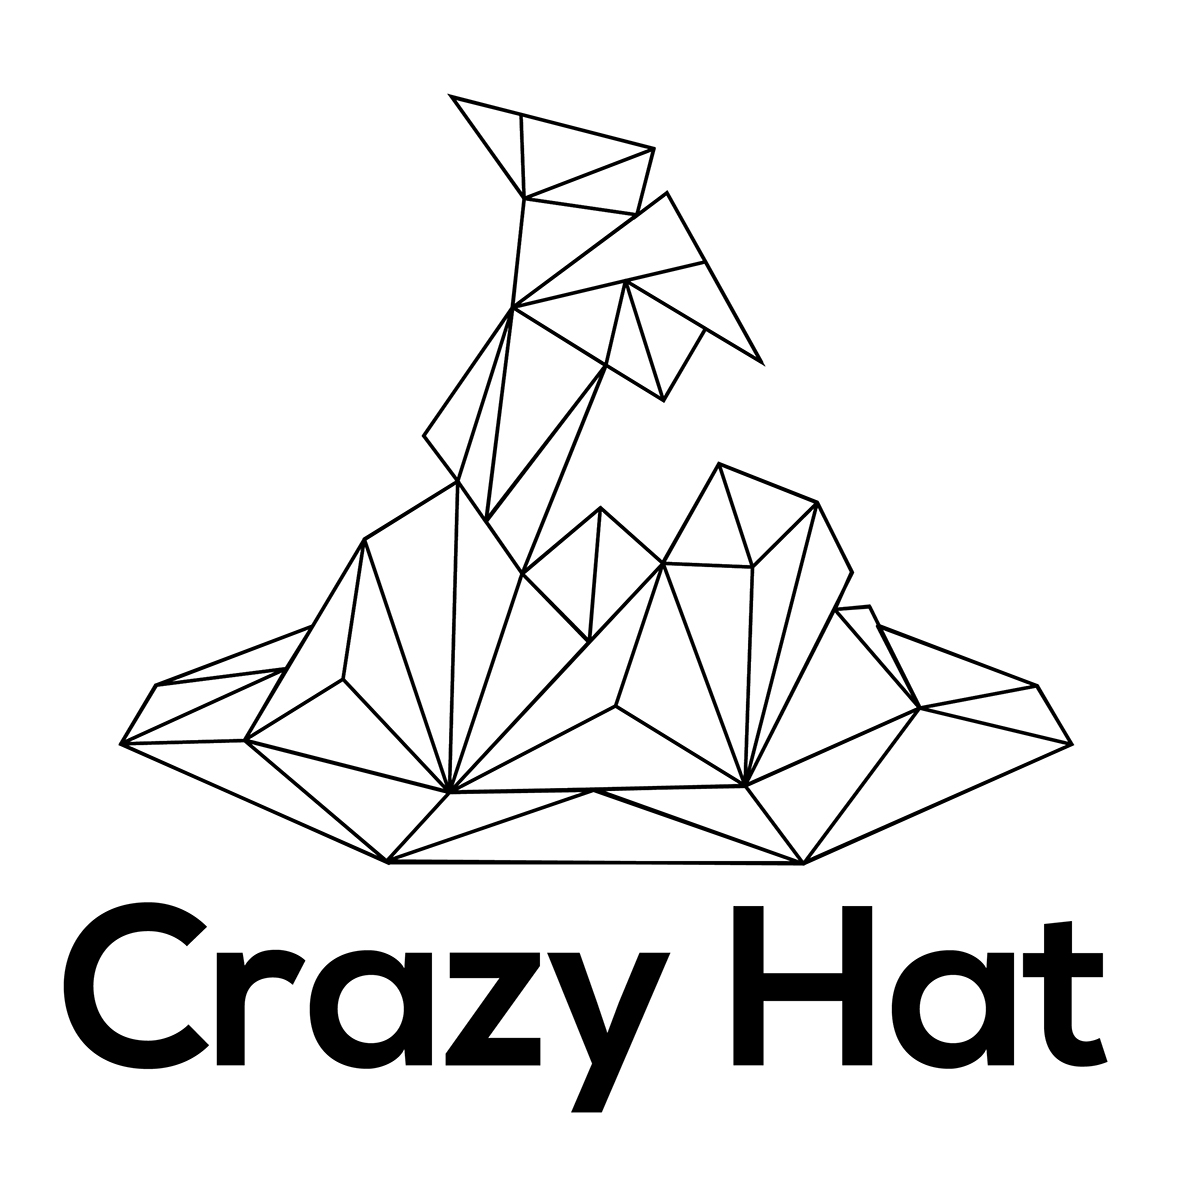 Logotipo logo crazy hat triangulos poligonos